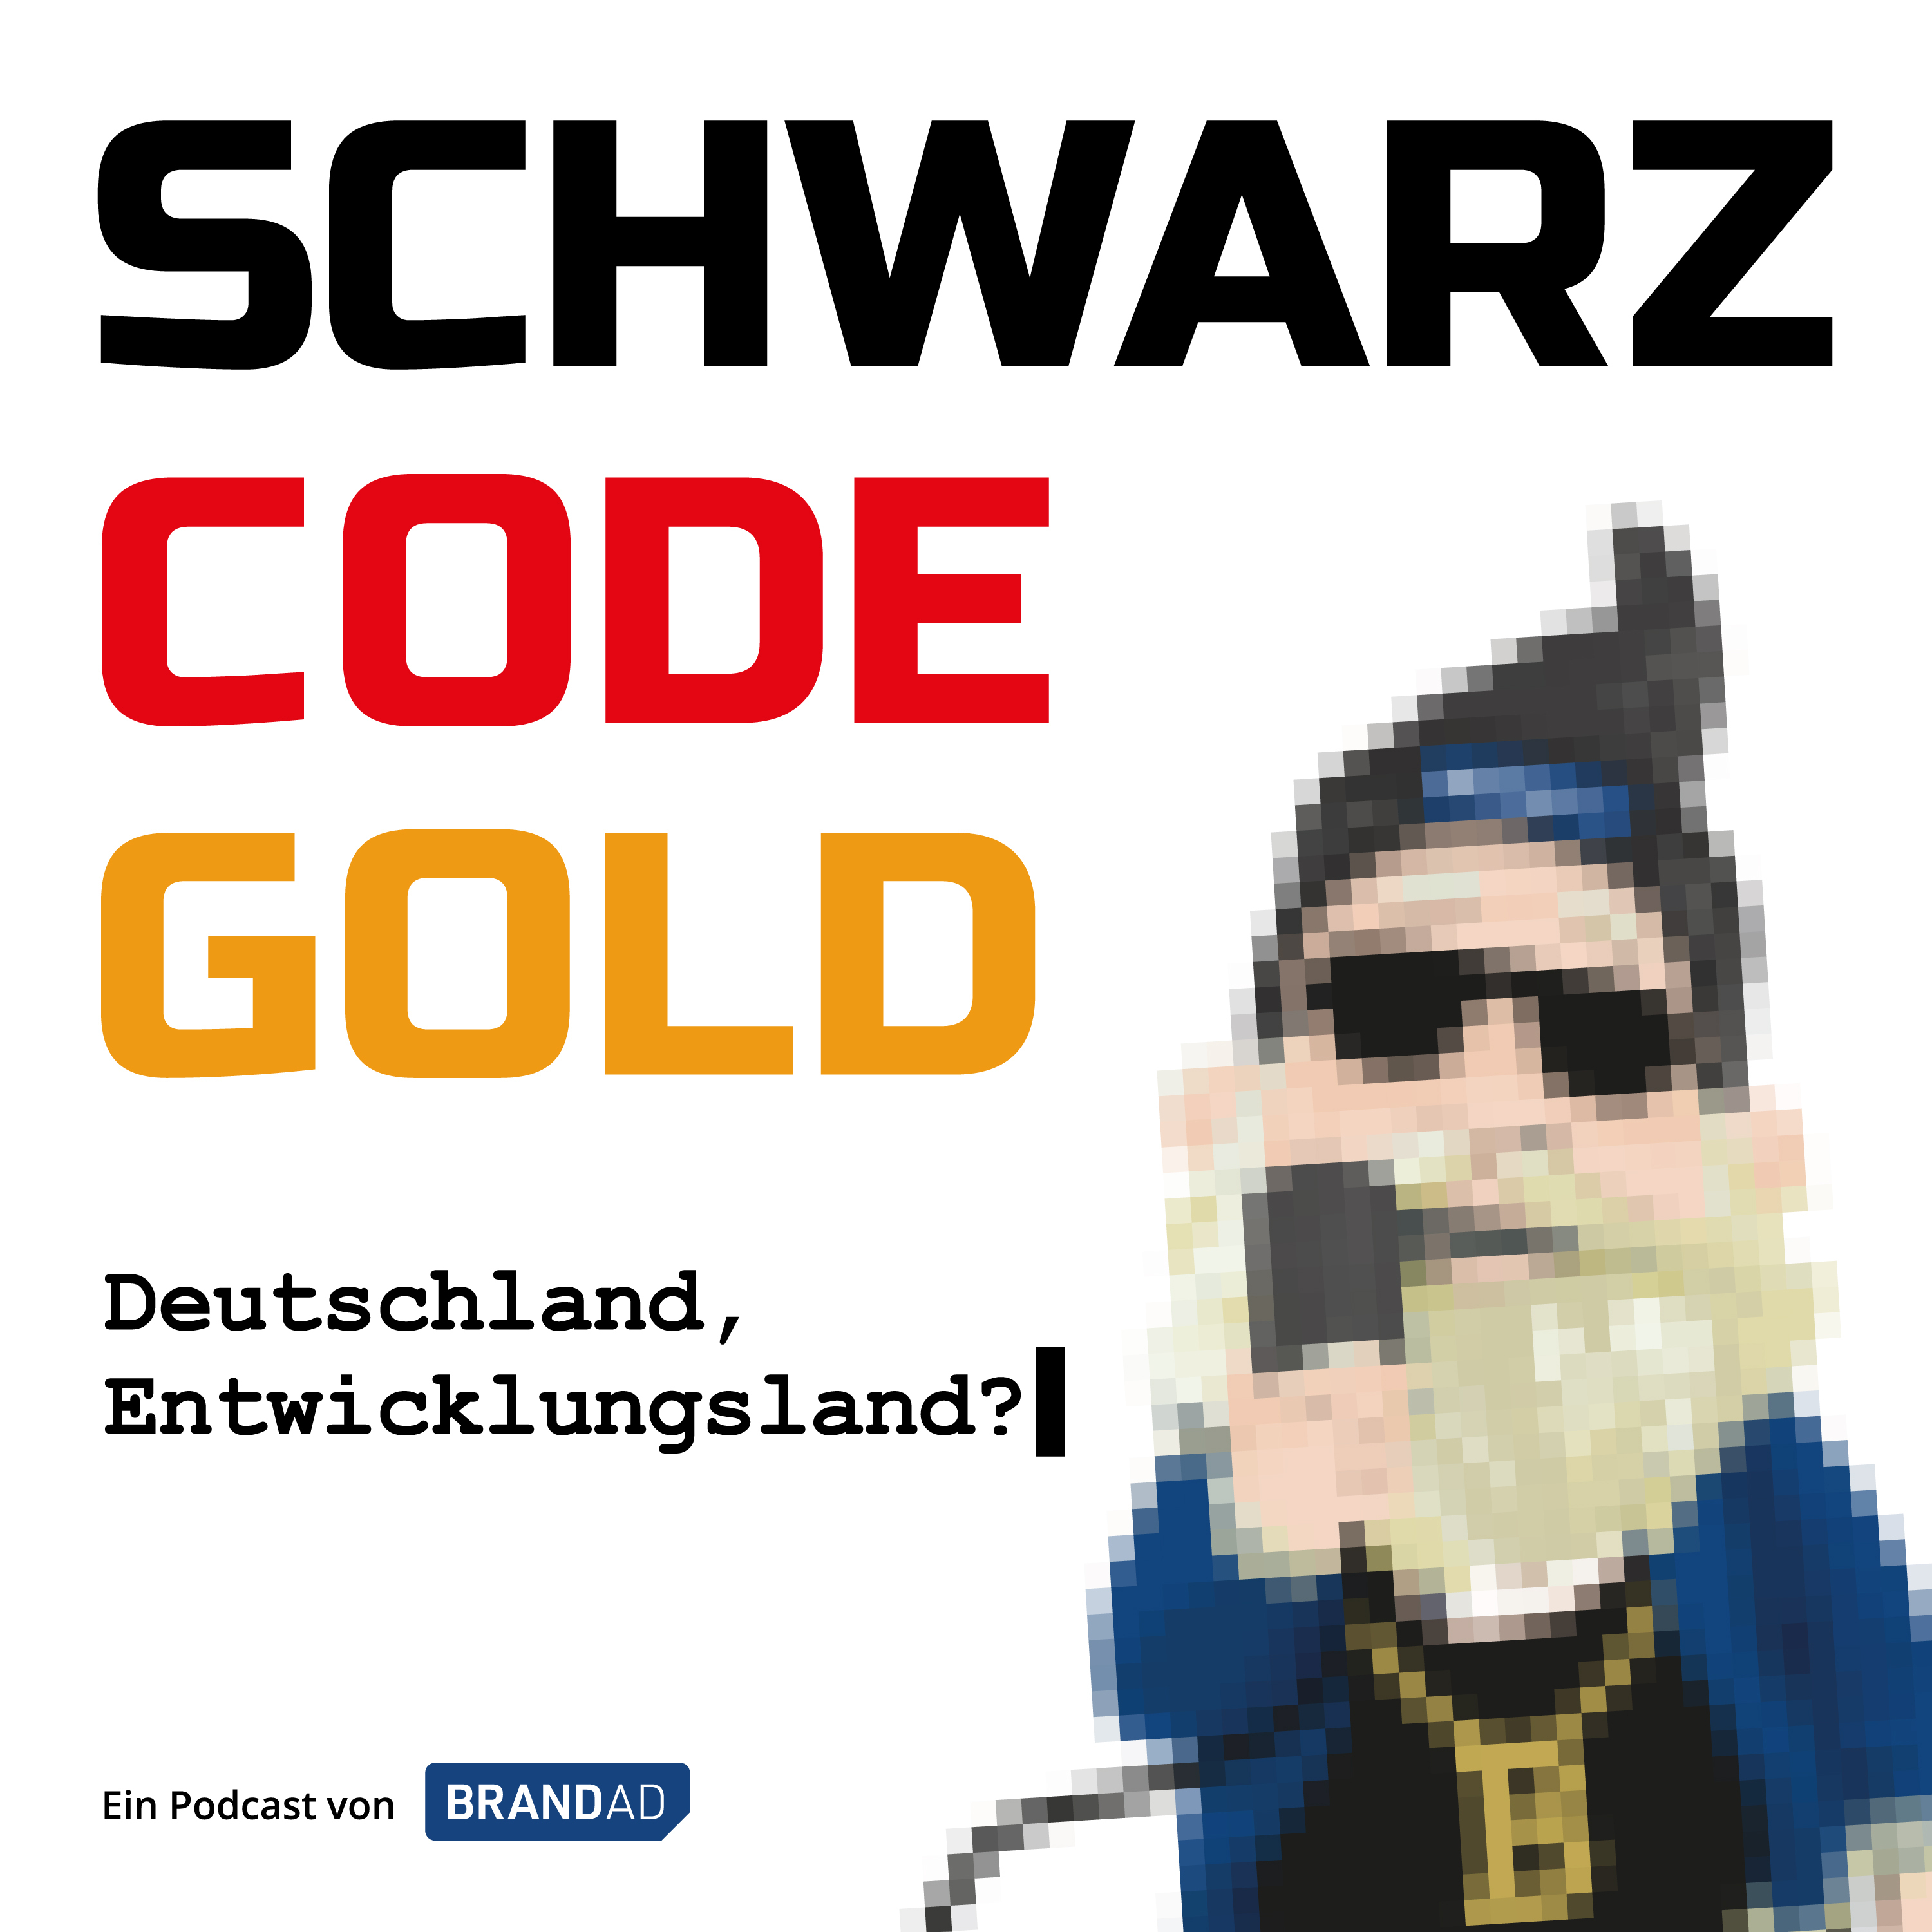 schwarz-code-gold-deutschland-entwicklungsland.jpeg